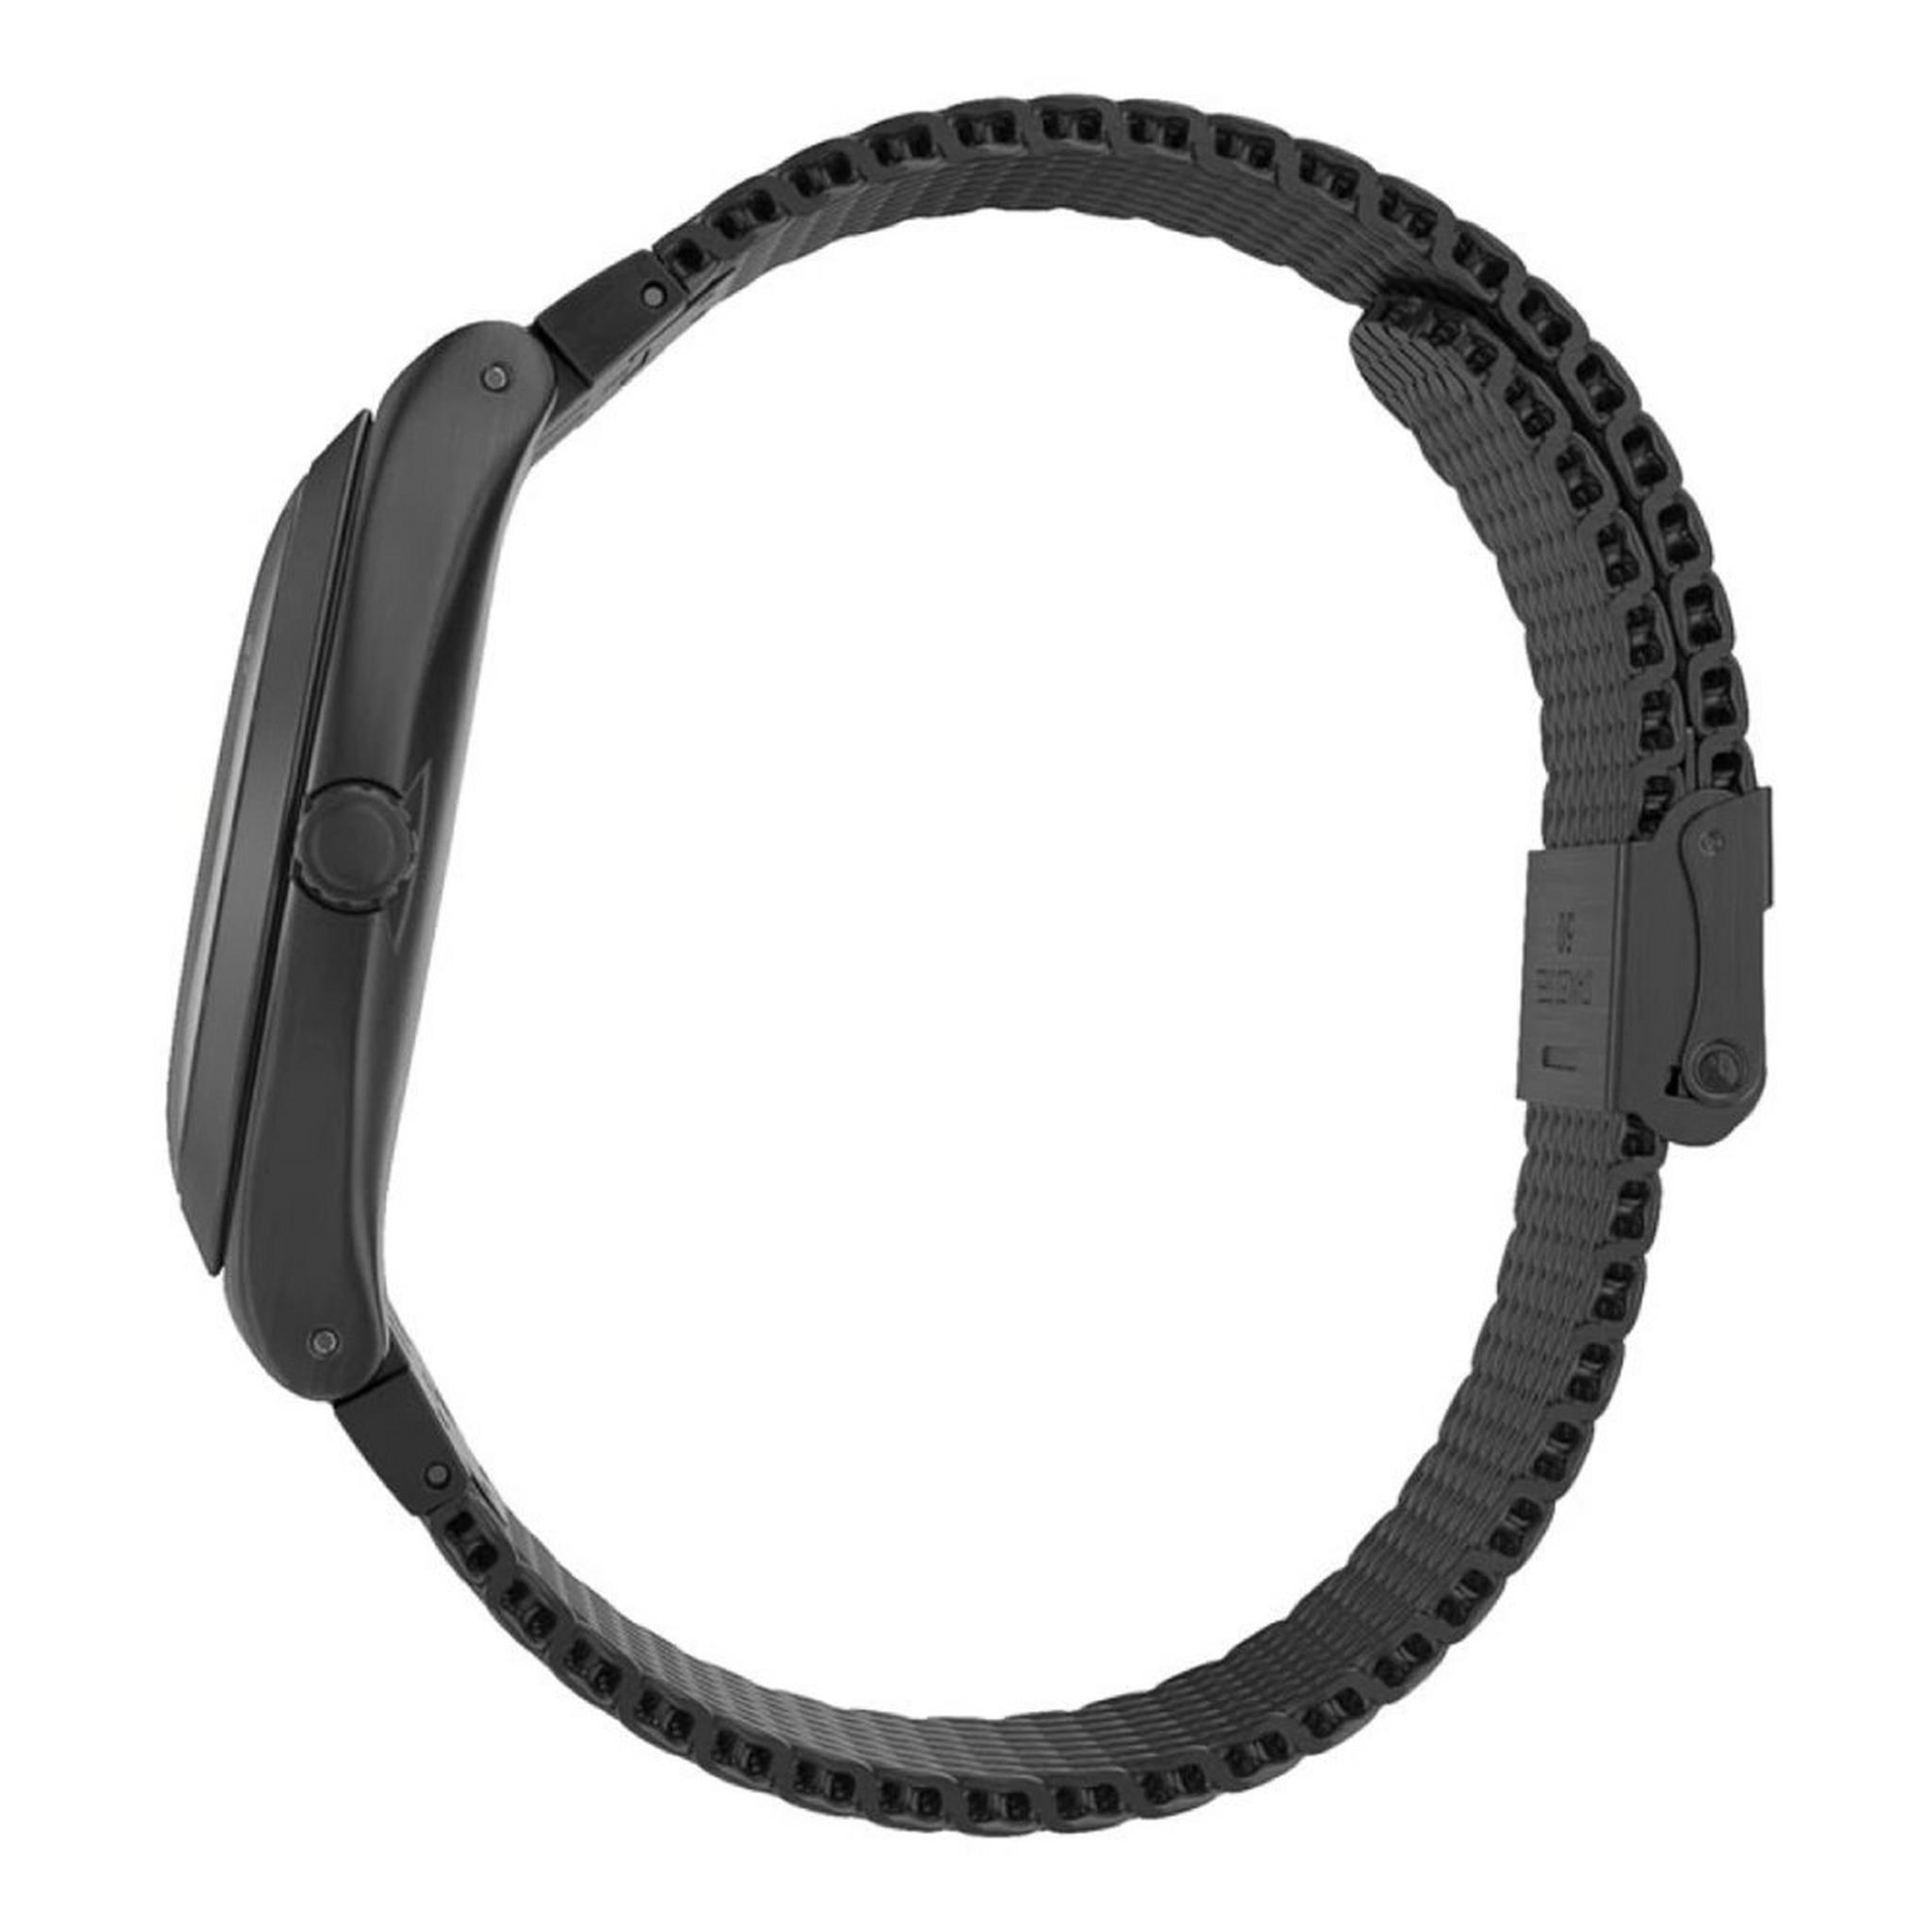 Swatch Quartz Unisex Analog 41mm Watch (SWAYWM403M)